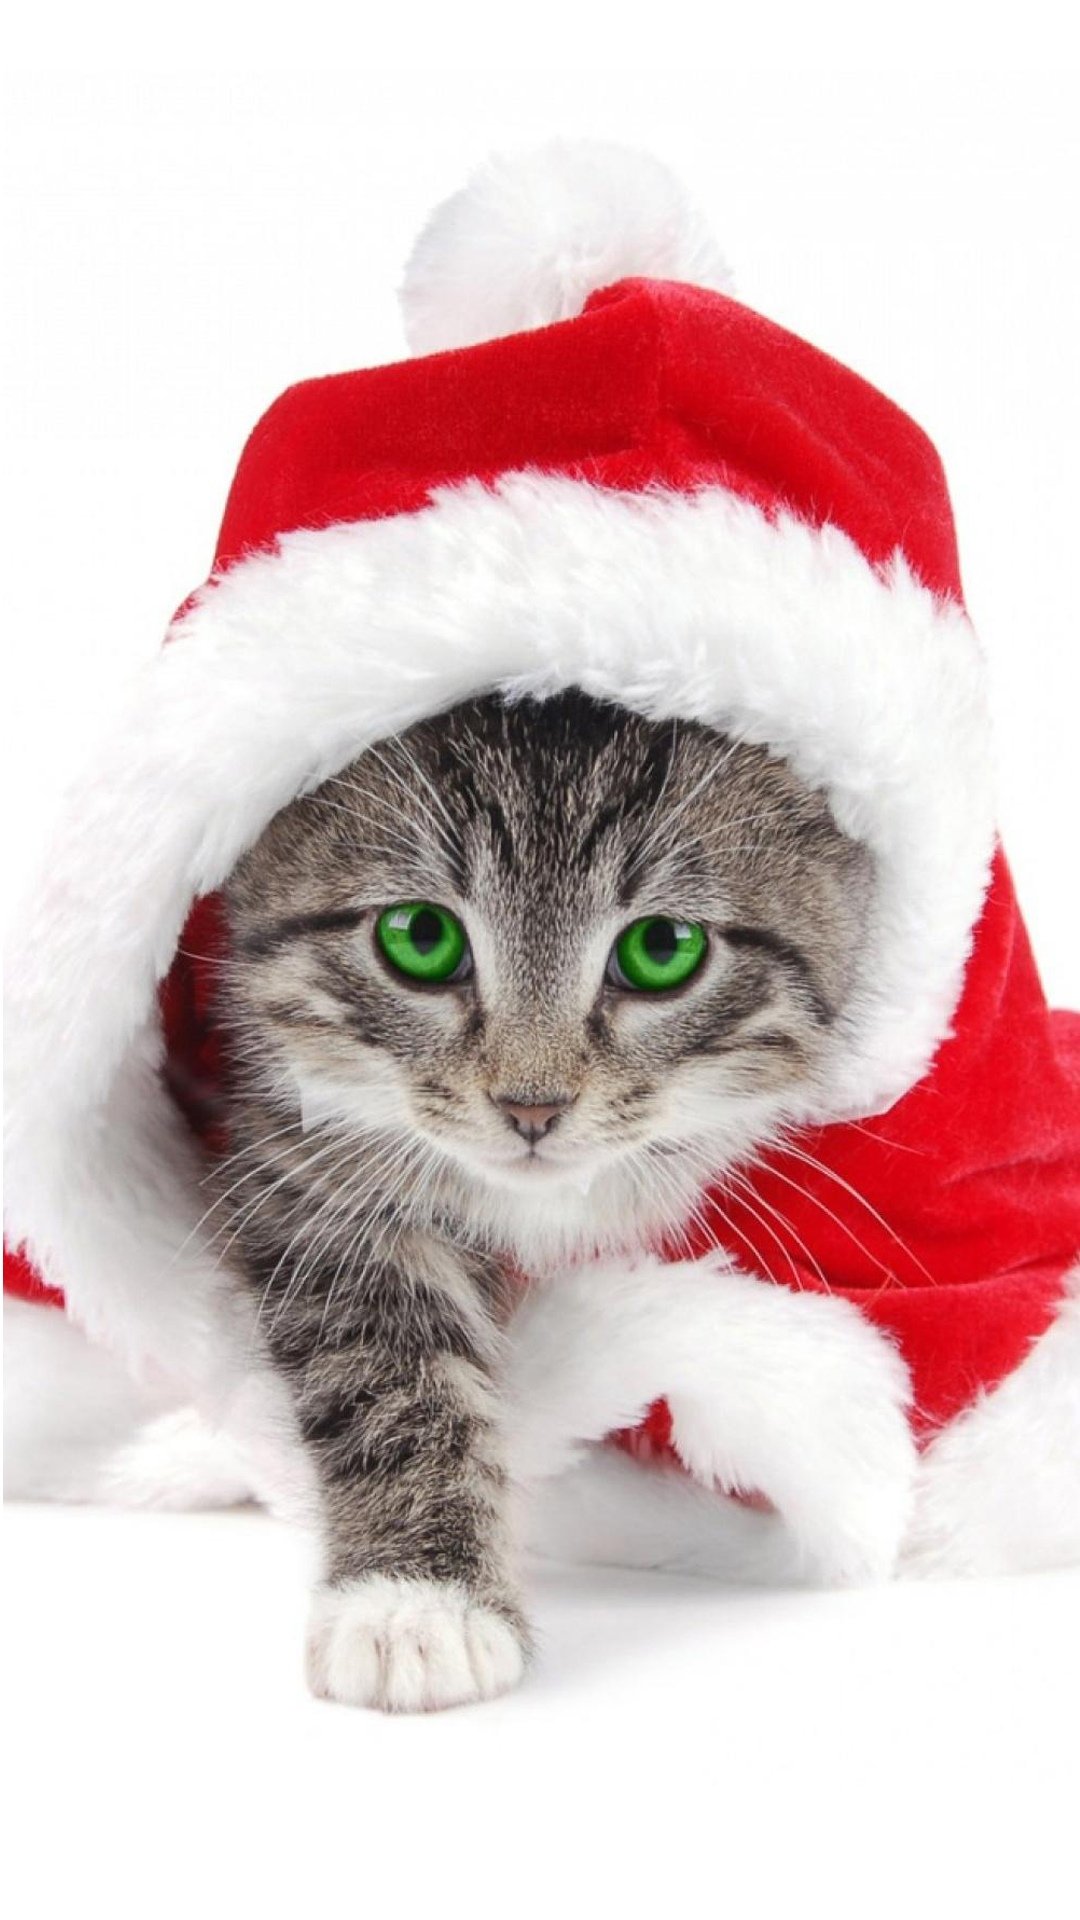 克劳斯猫圣诞节头载红色圣诞帽